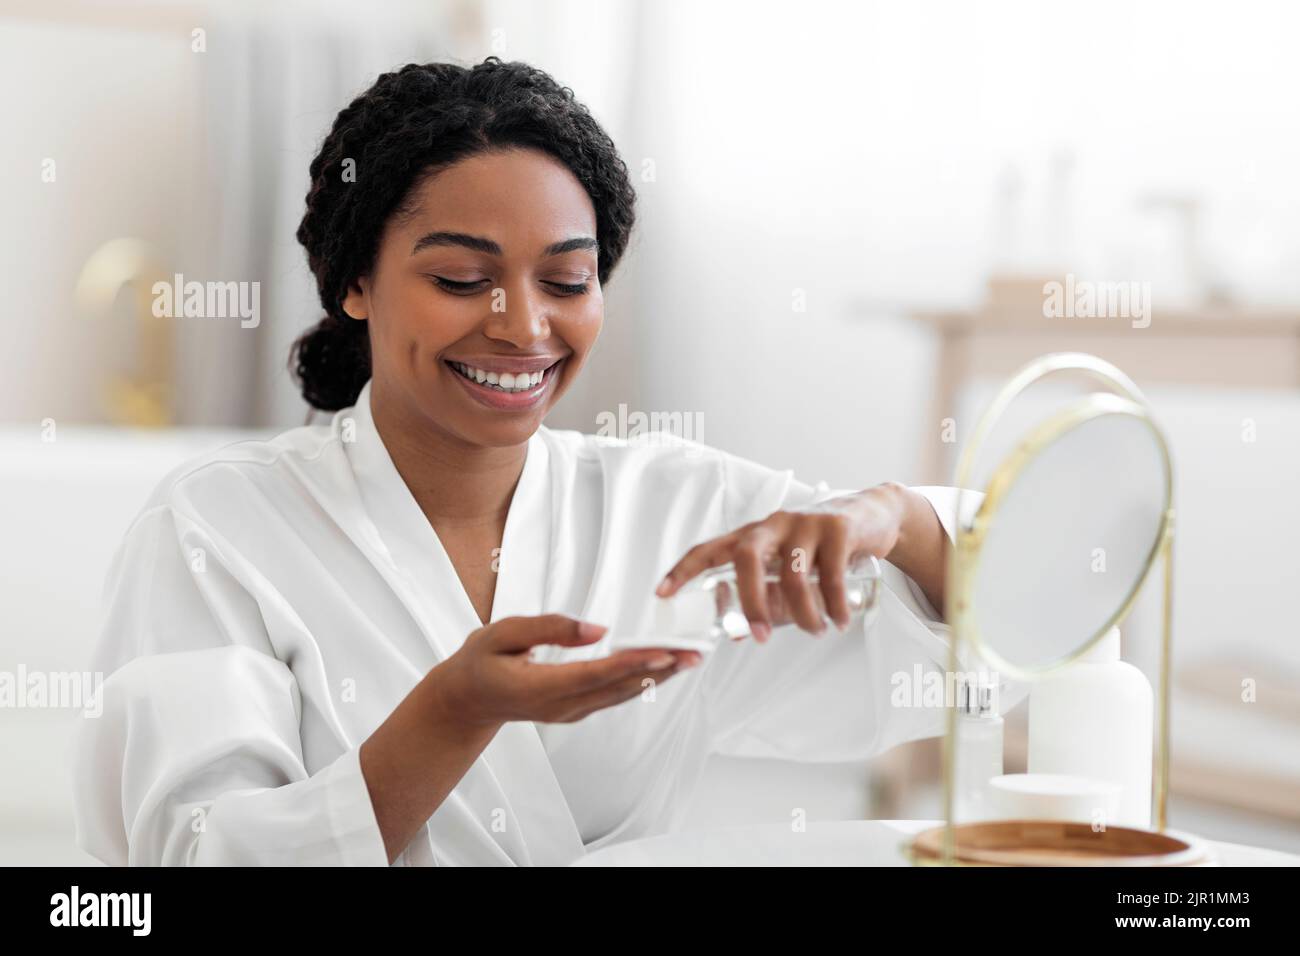 Femme noire souriante utilisant un tampon de coton et de l'eau micellaire pour les soins de la peau Banque D'Images